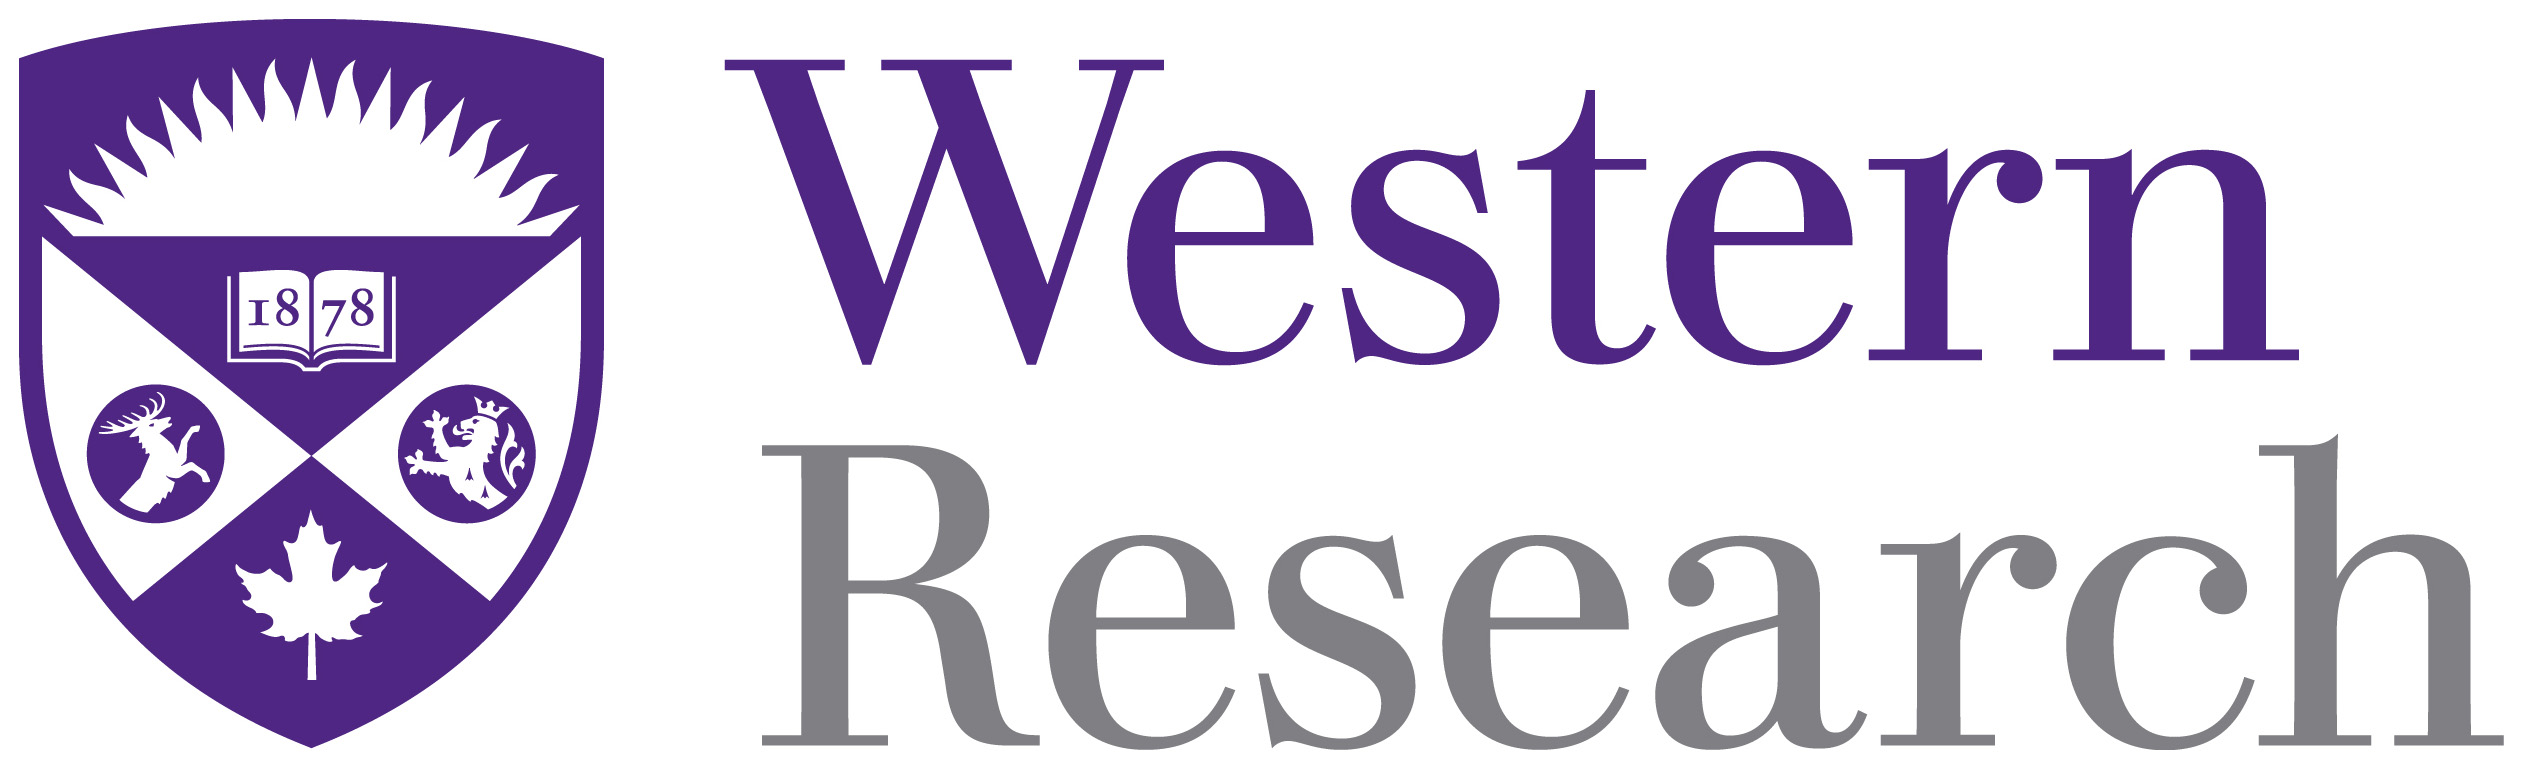 [Western] Logo